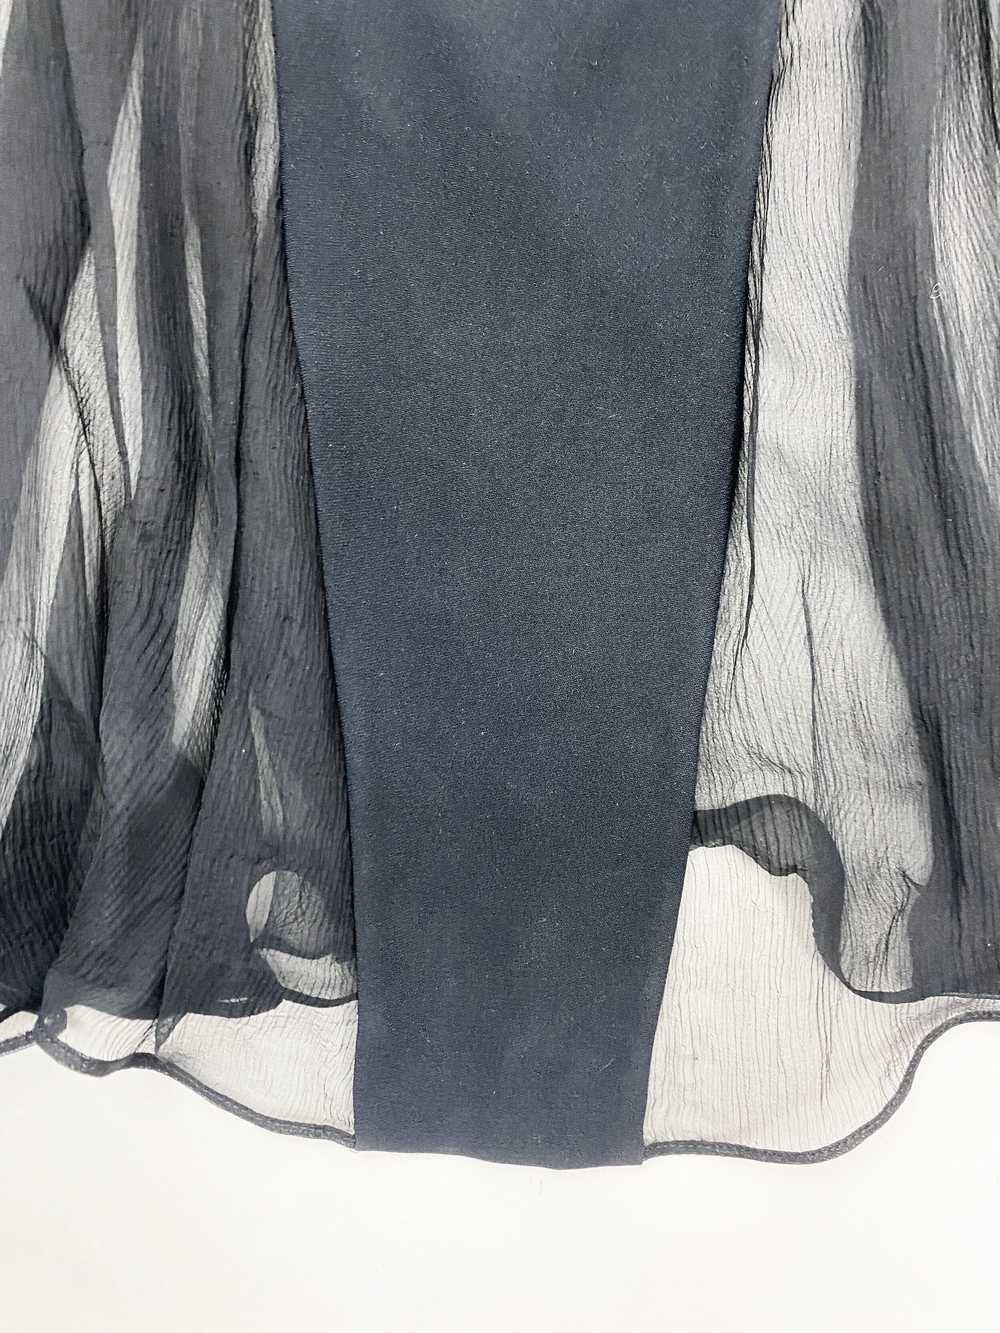 Gianfranco Ferre 90s sheer chiffon dress - image 9